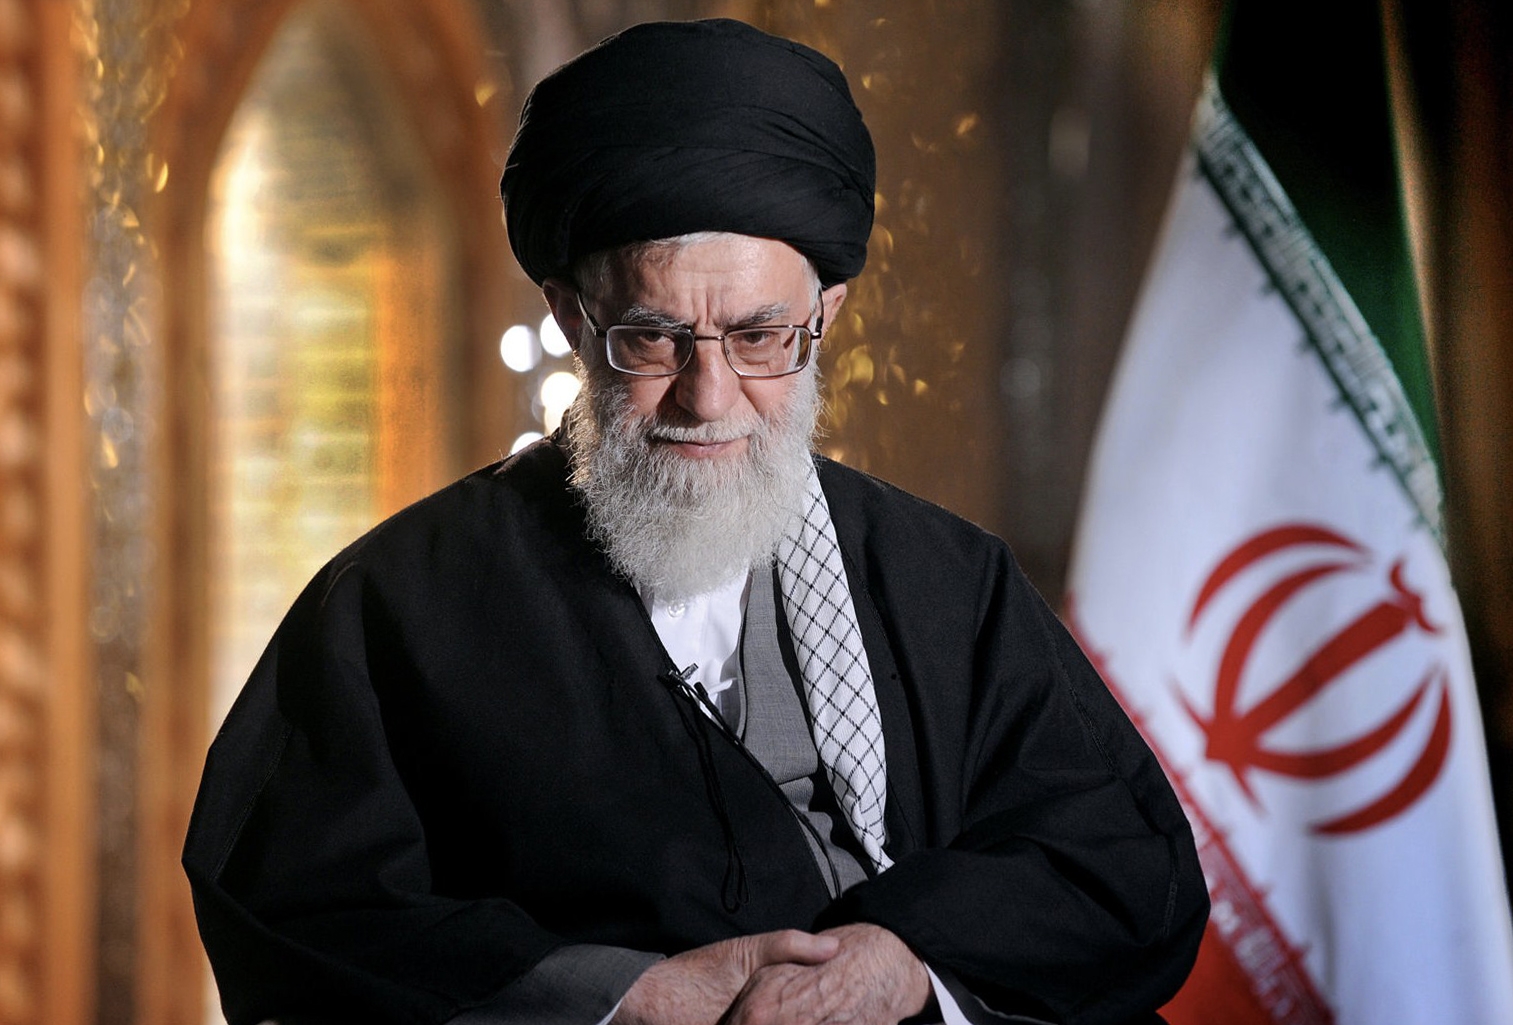  المرشد الأعلى للجمهورية الإيرانية - آية الله علي خامنئي